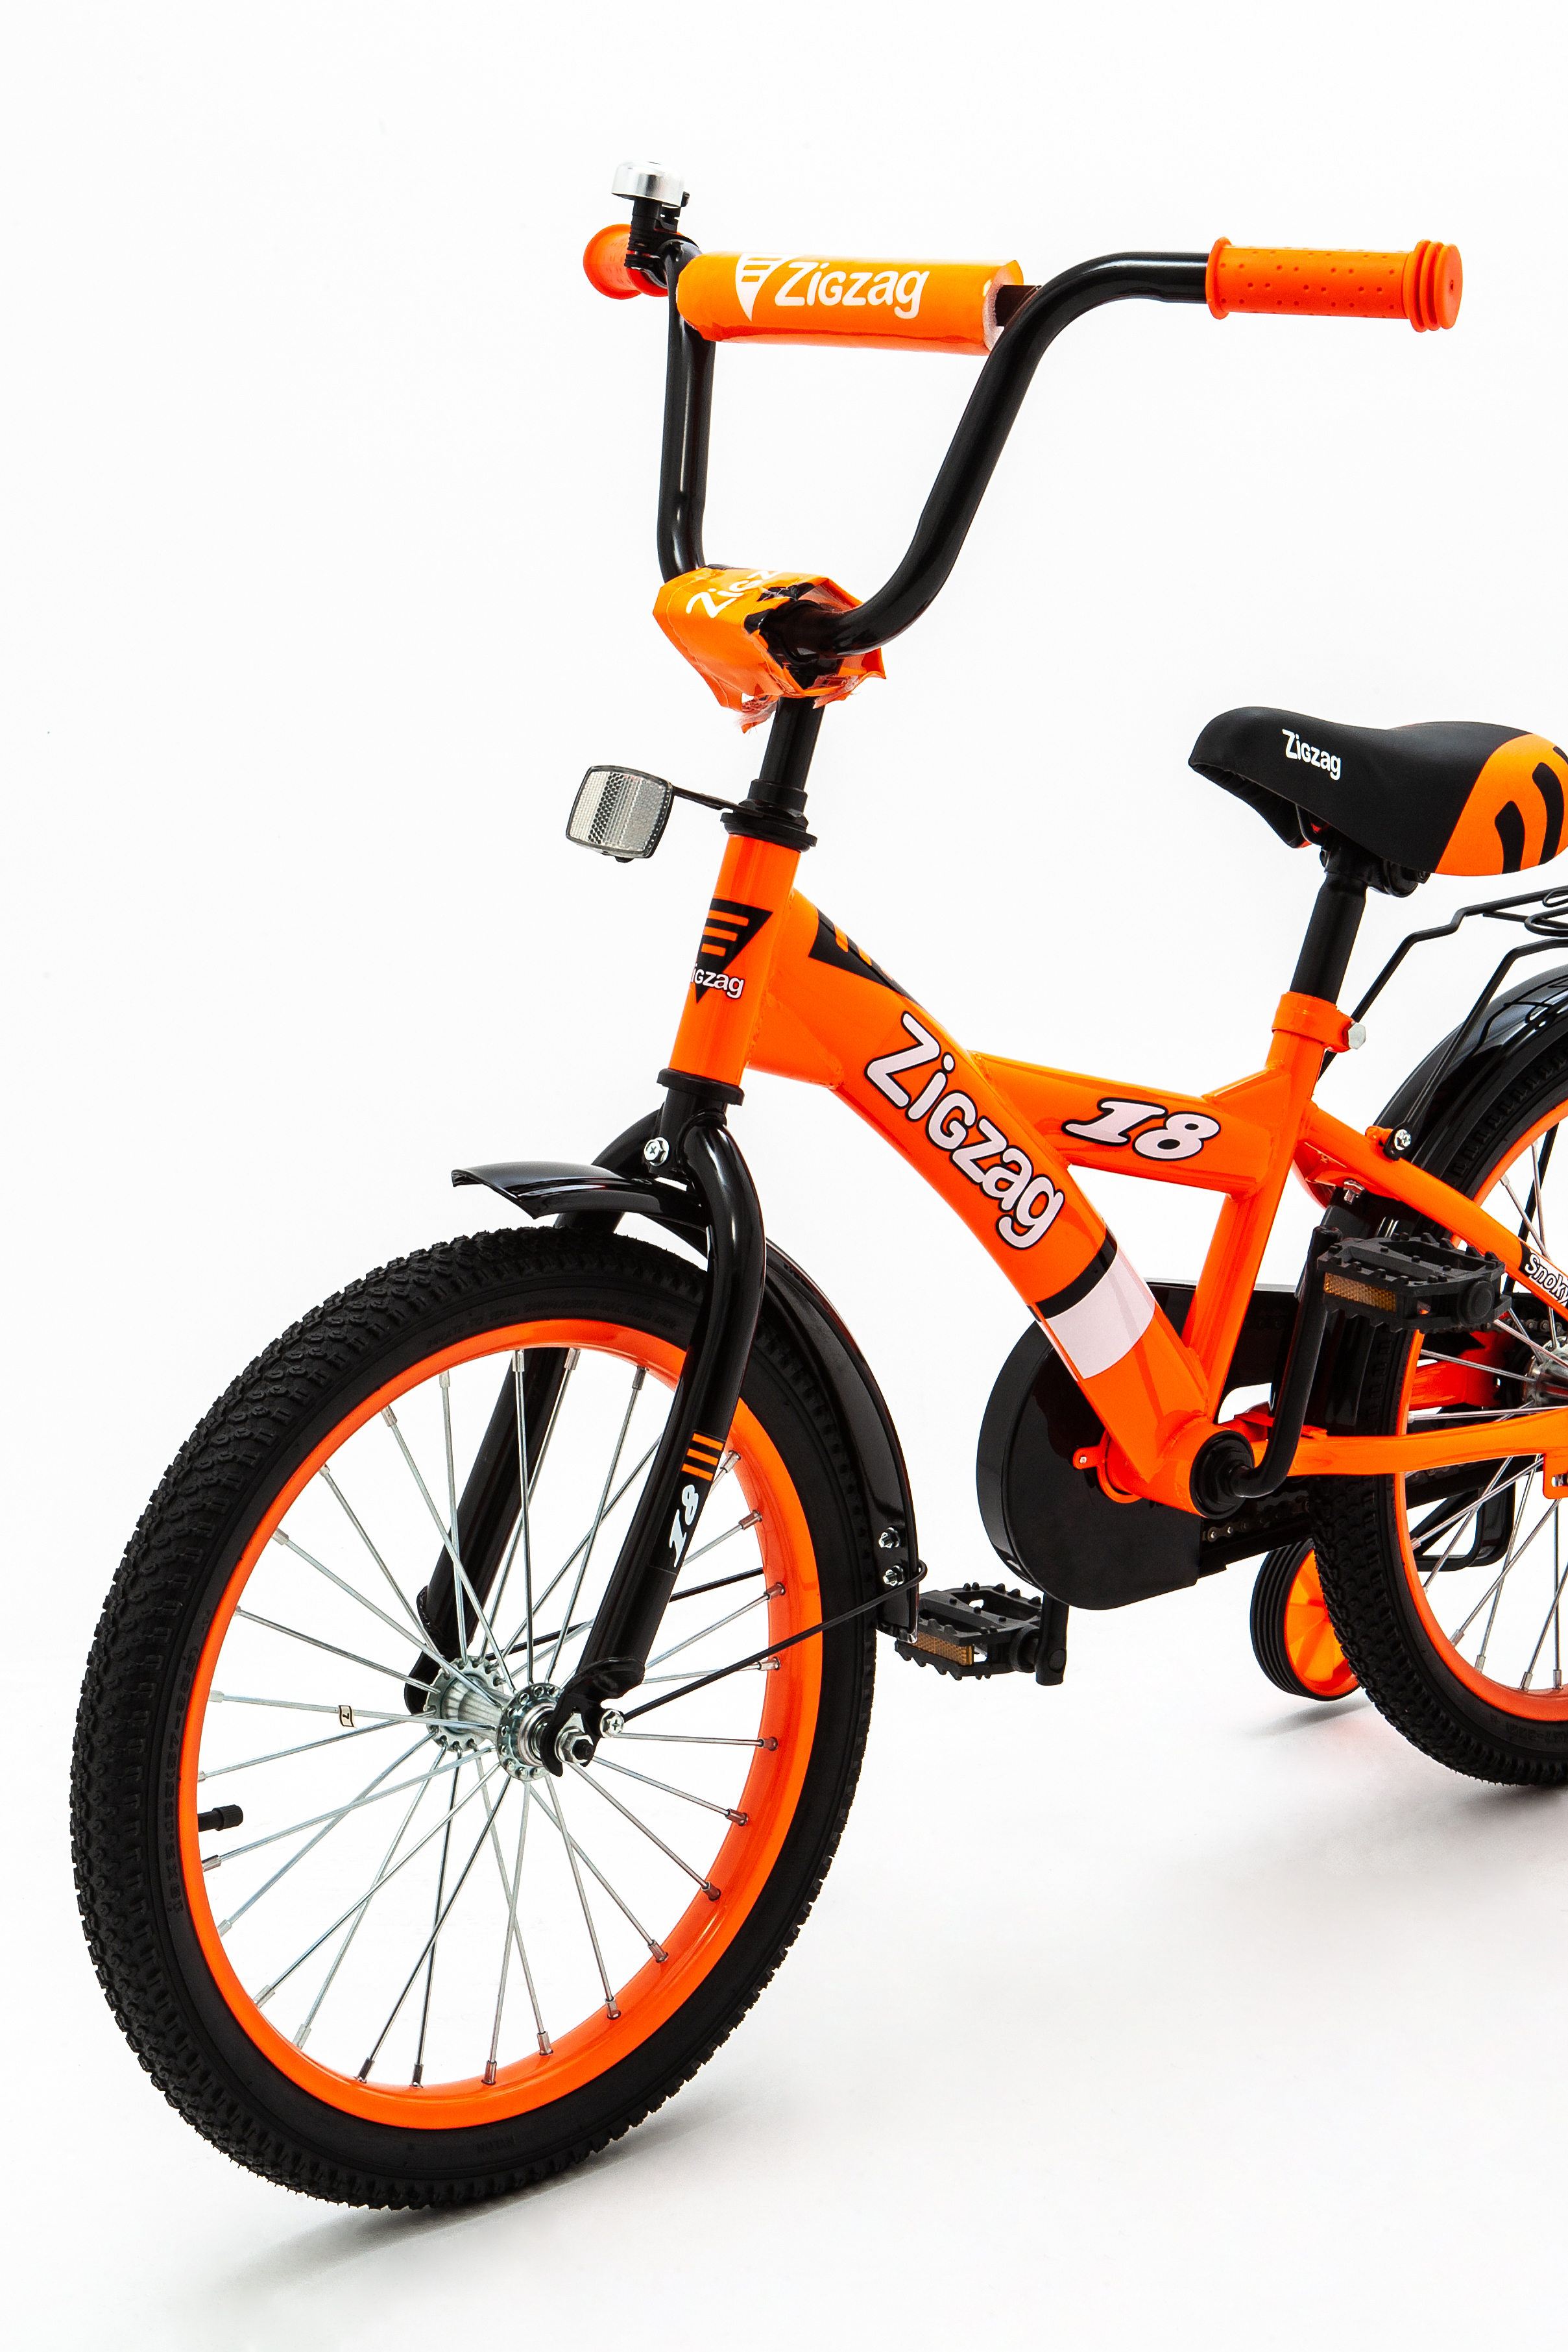 Велосипед ZigZag SNOKY оранжевый 18 дюймов - фото 5